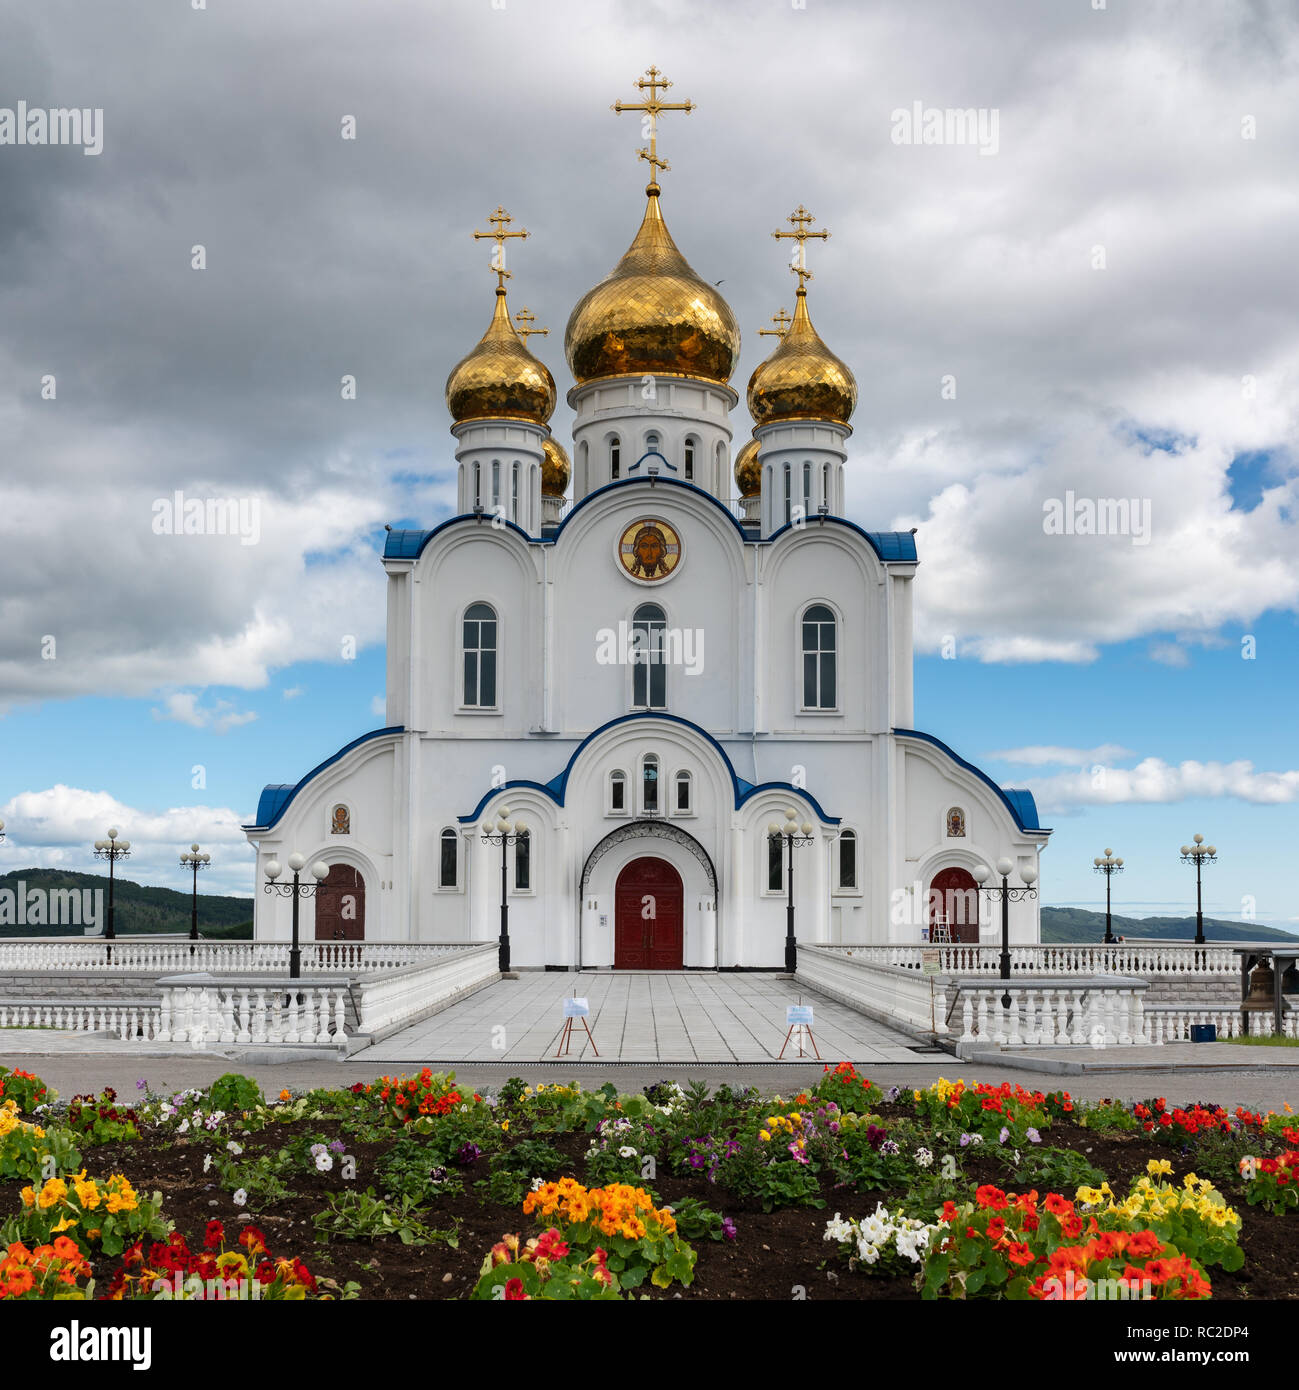 Sainte Trinité Cathédrale Orthodoxe de Petropavlovsk, péninsule du Kamtchatka Diocèse de l'Église orthodoxe russe du patriarcat de Moscou Banque D'Images